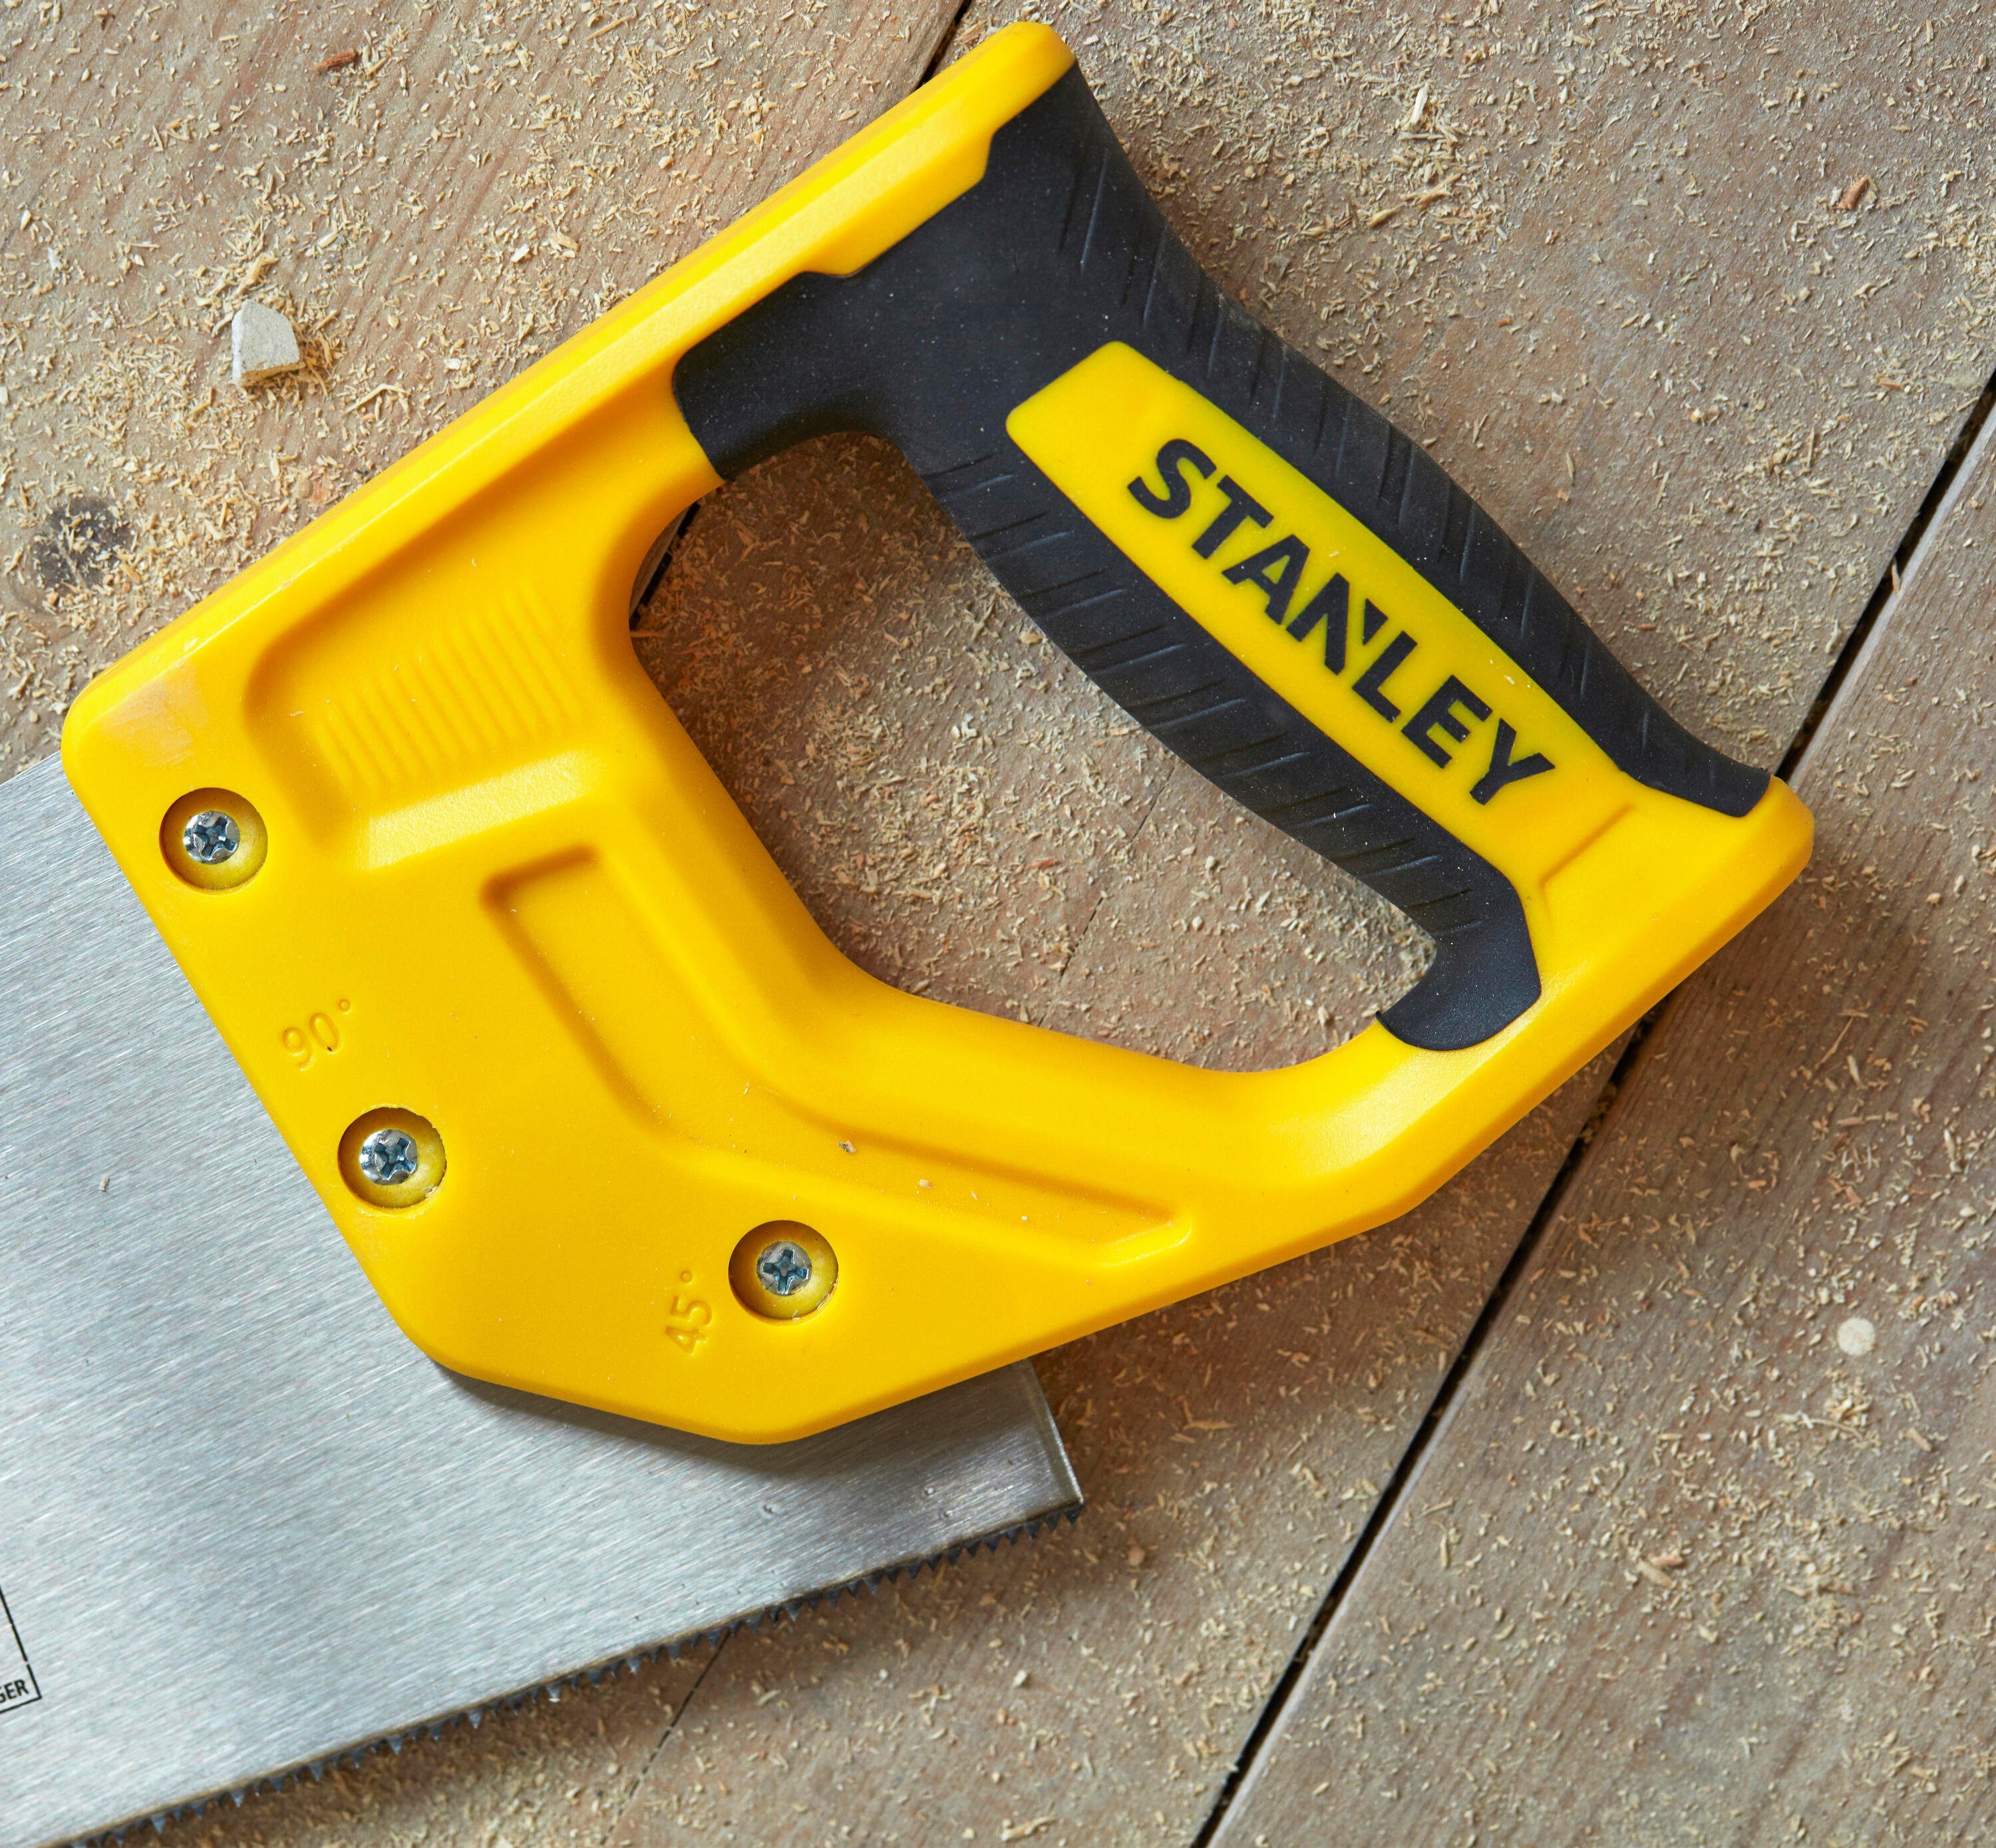 STANLEY Handsäge STHT20368-1 Säge 7TPI Sharp 22”/550mm Cut